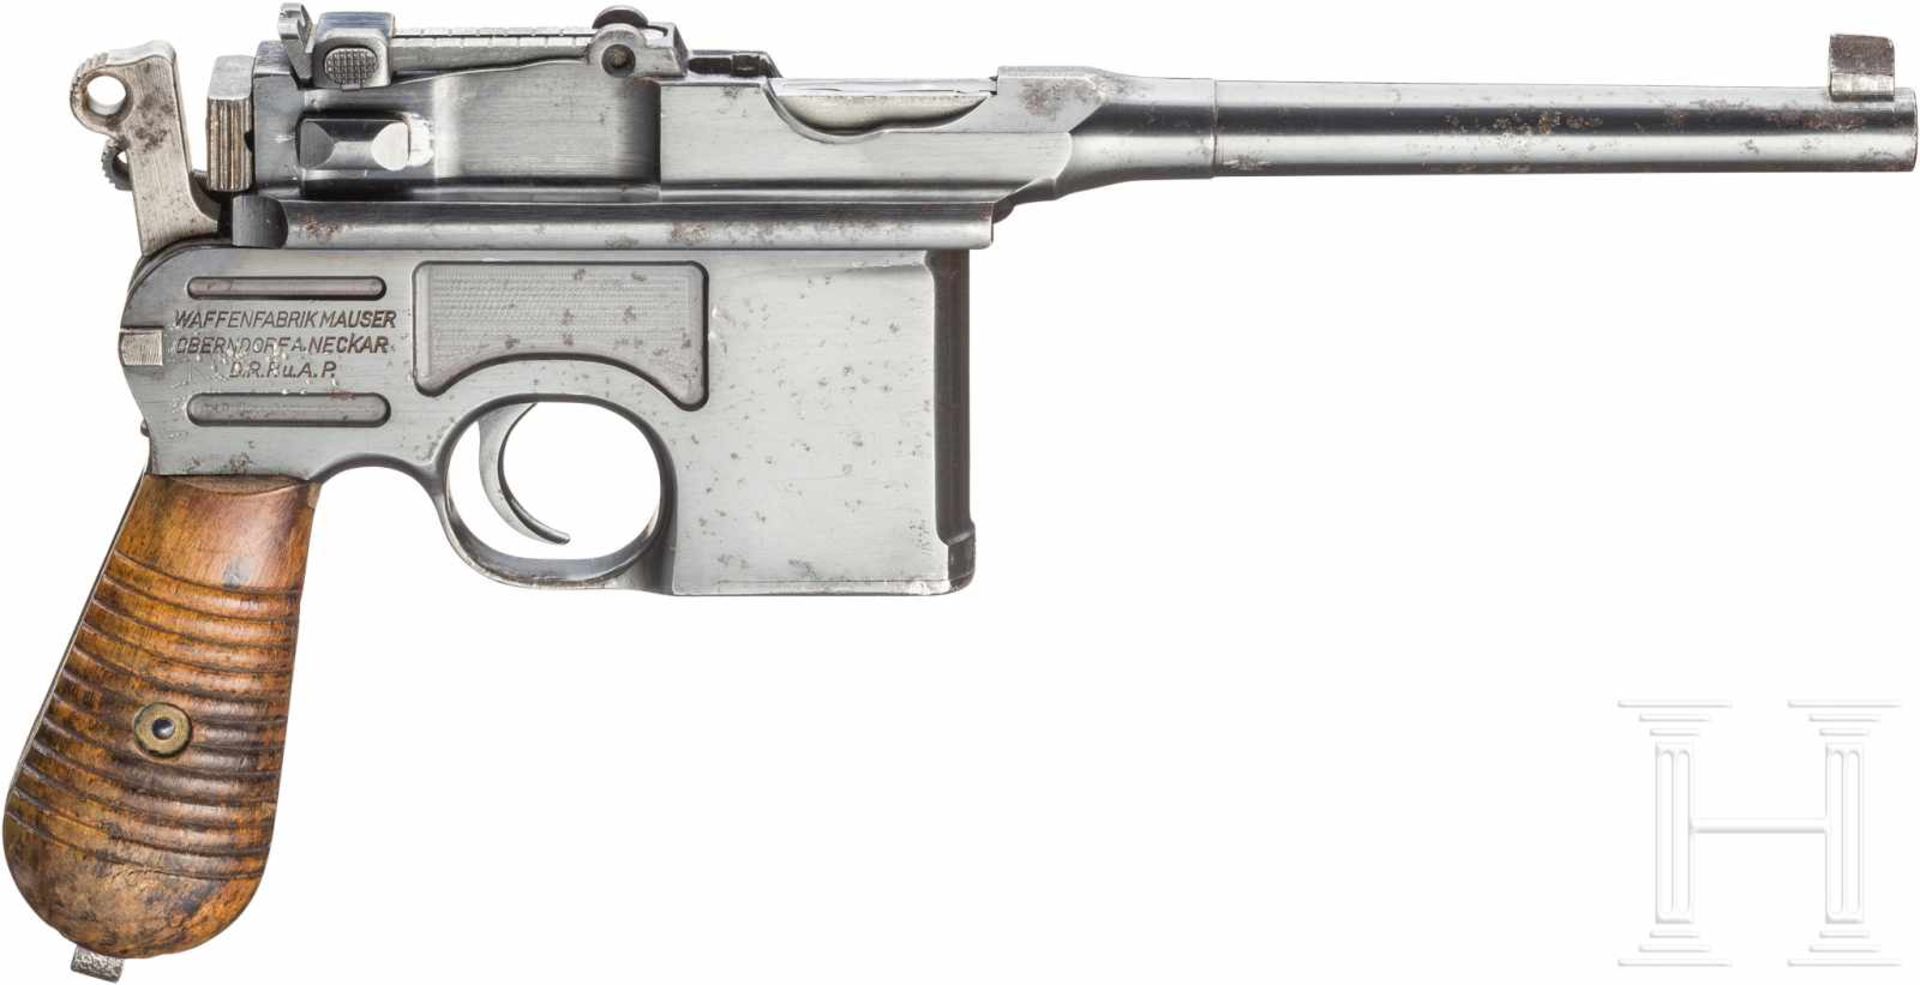 Mauser Mod. 1930Kal. 7,63 Mauser, Nr. 916460, Nummerngleich. Fast blanker Lauf, Länge 130 mm. - Bild 2 aus 2